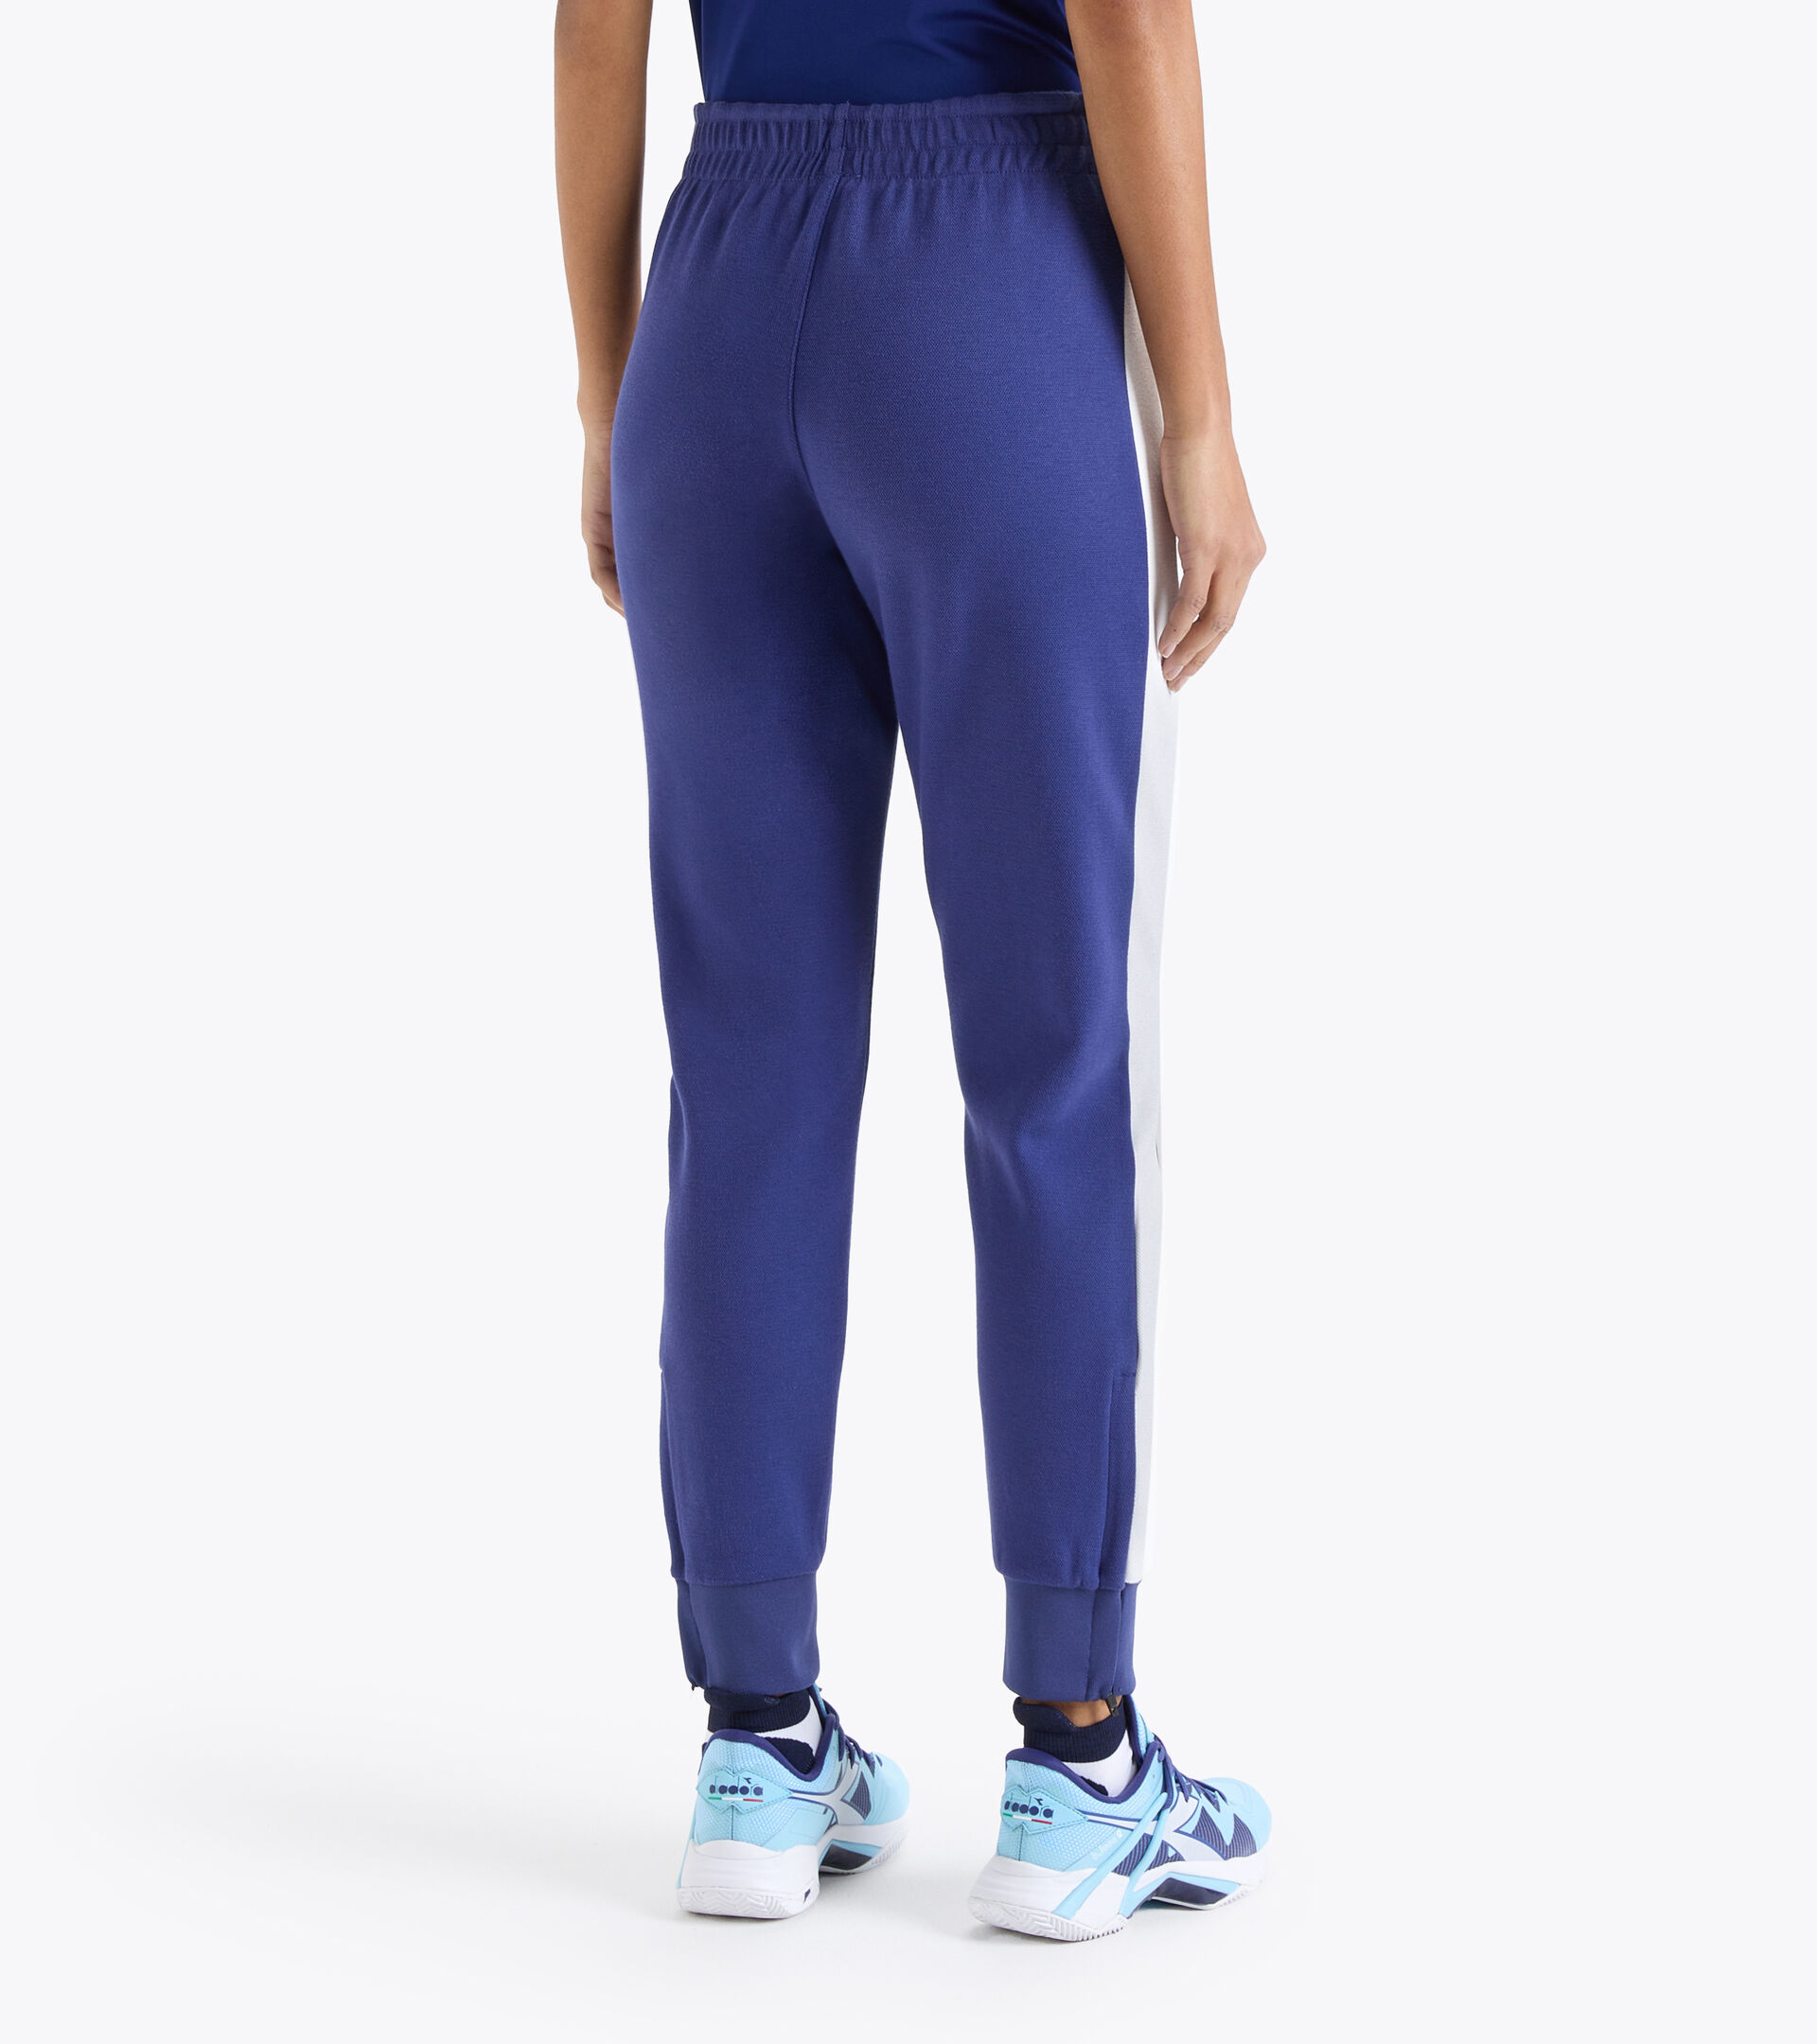 L. PANTS Tennis pants - Women - Diadora Online Store CA